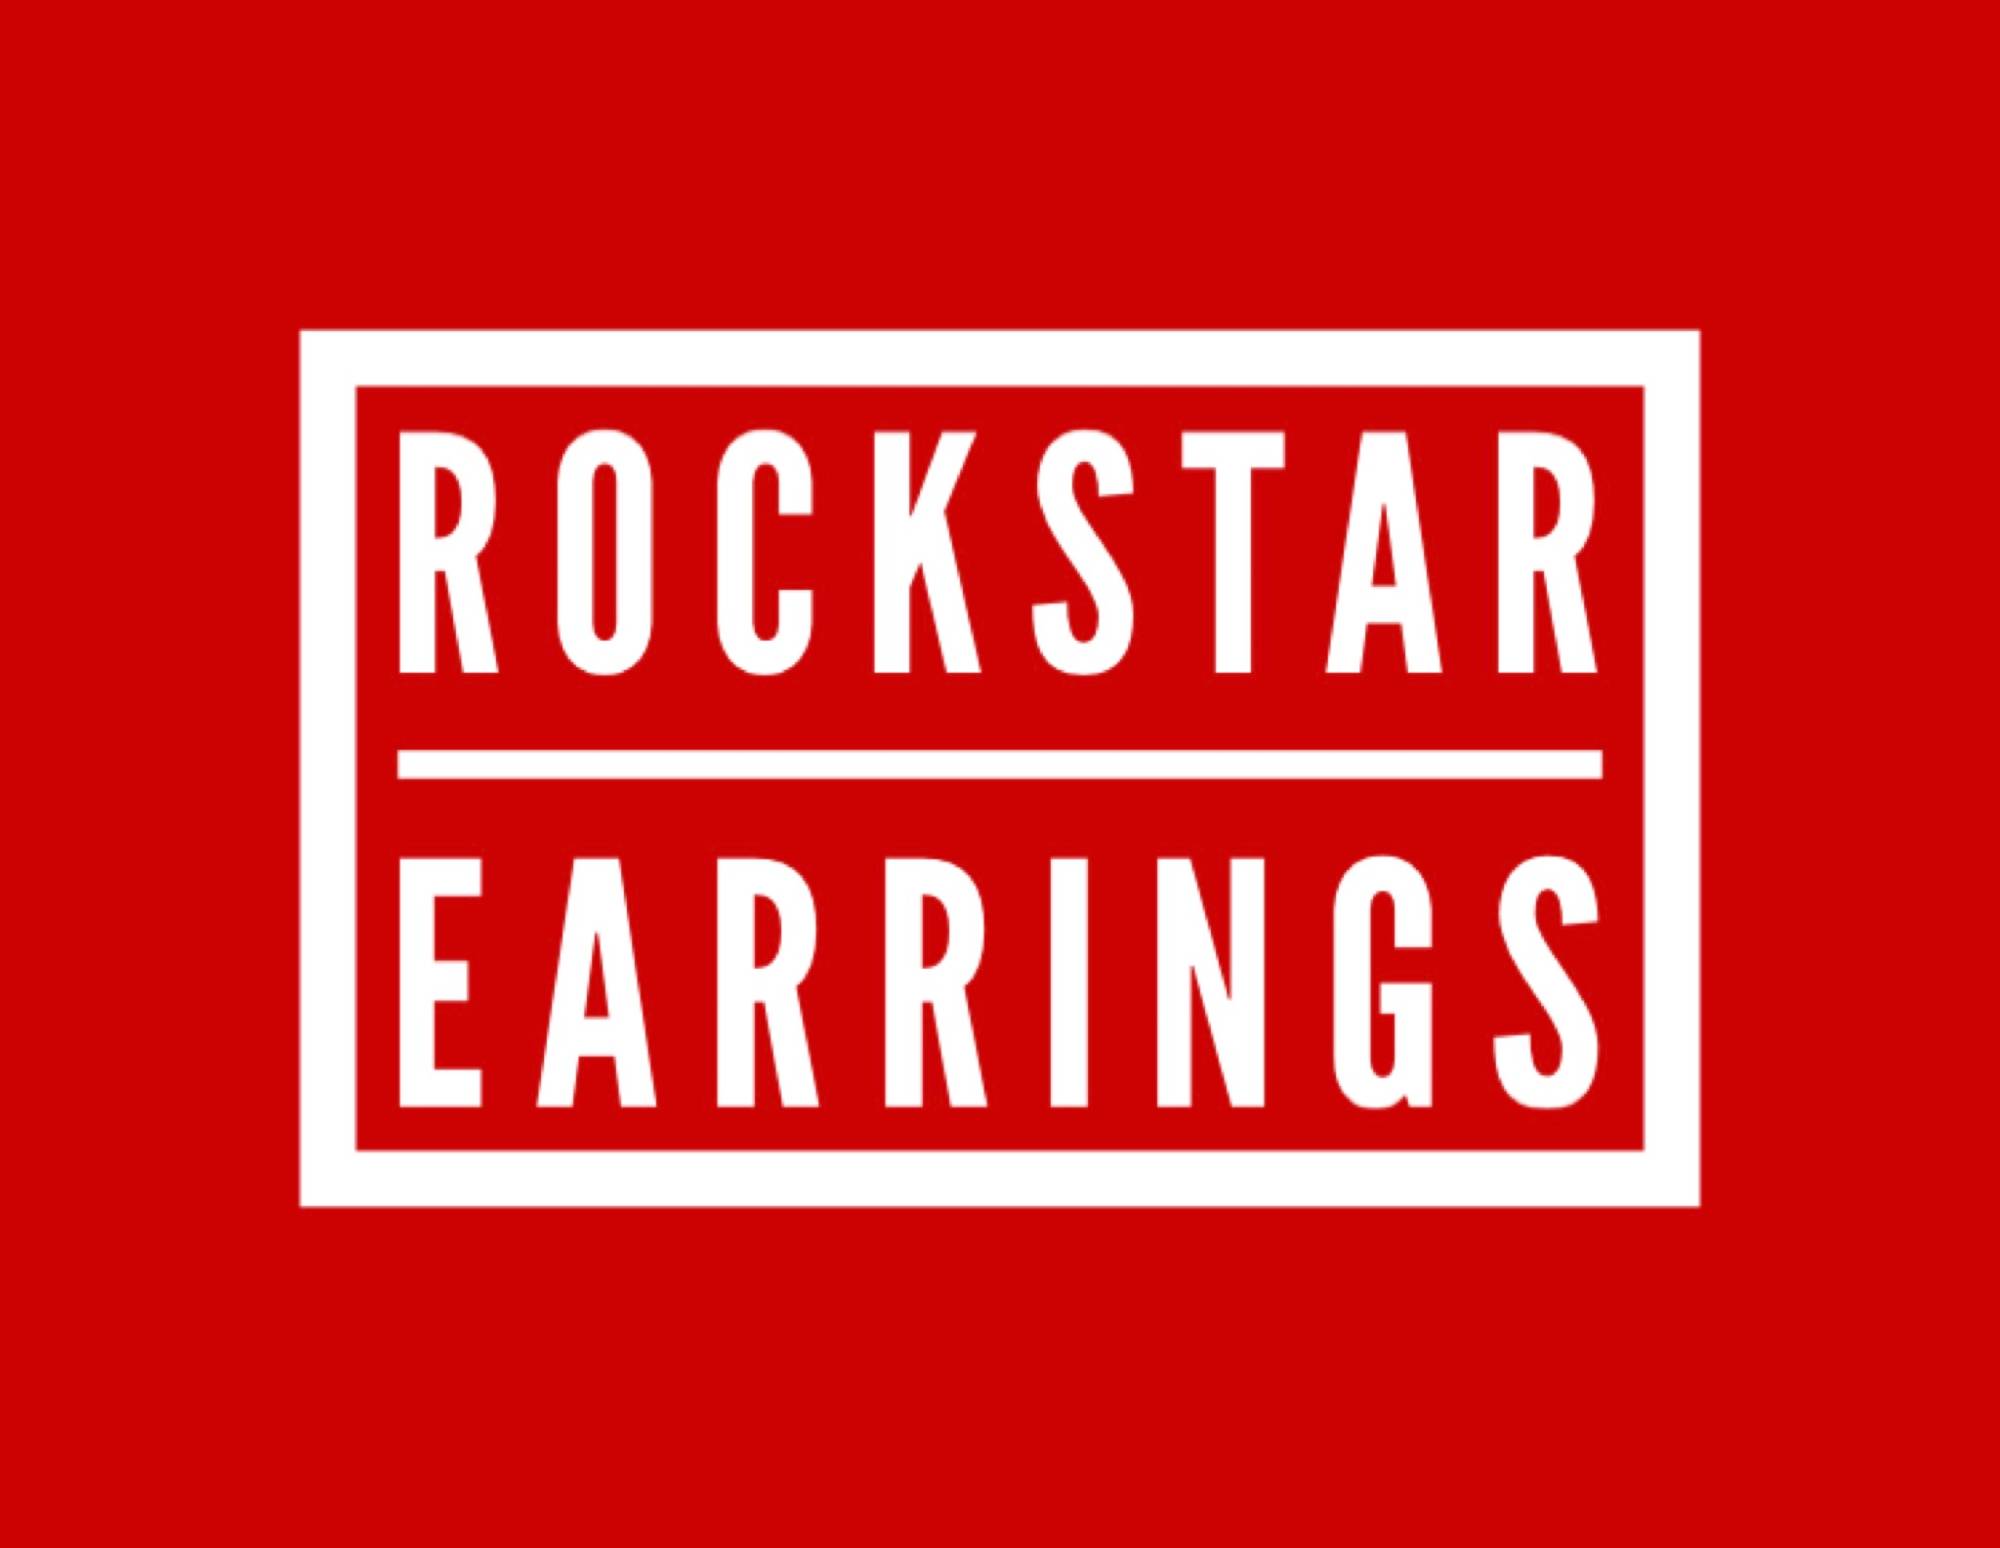 Rockstar Earrings